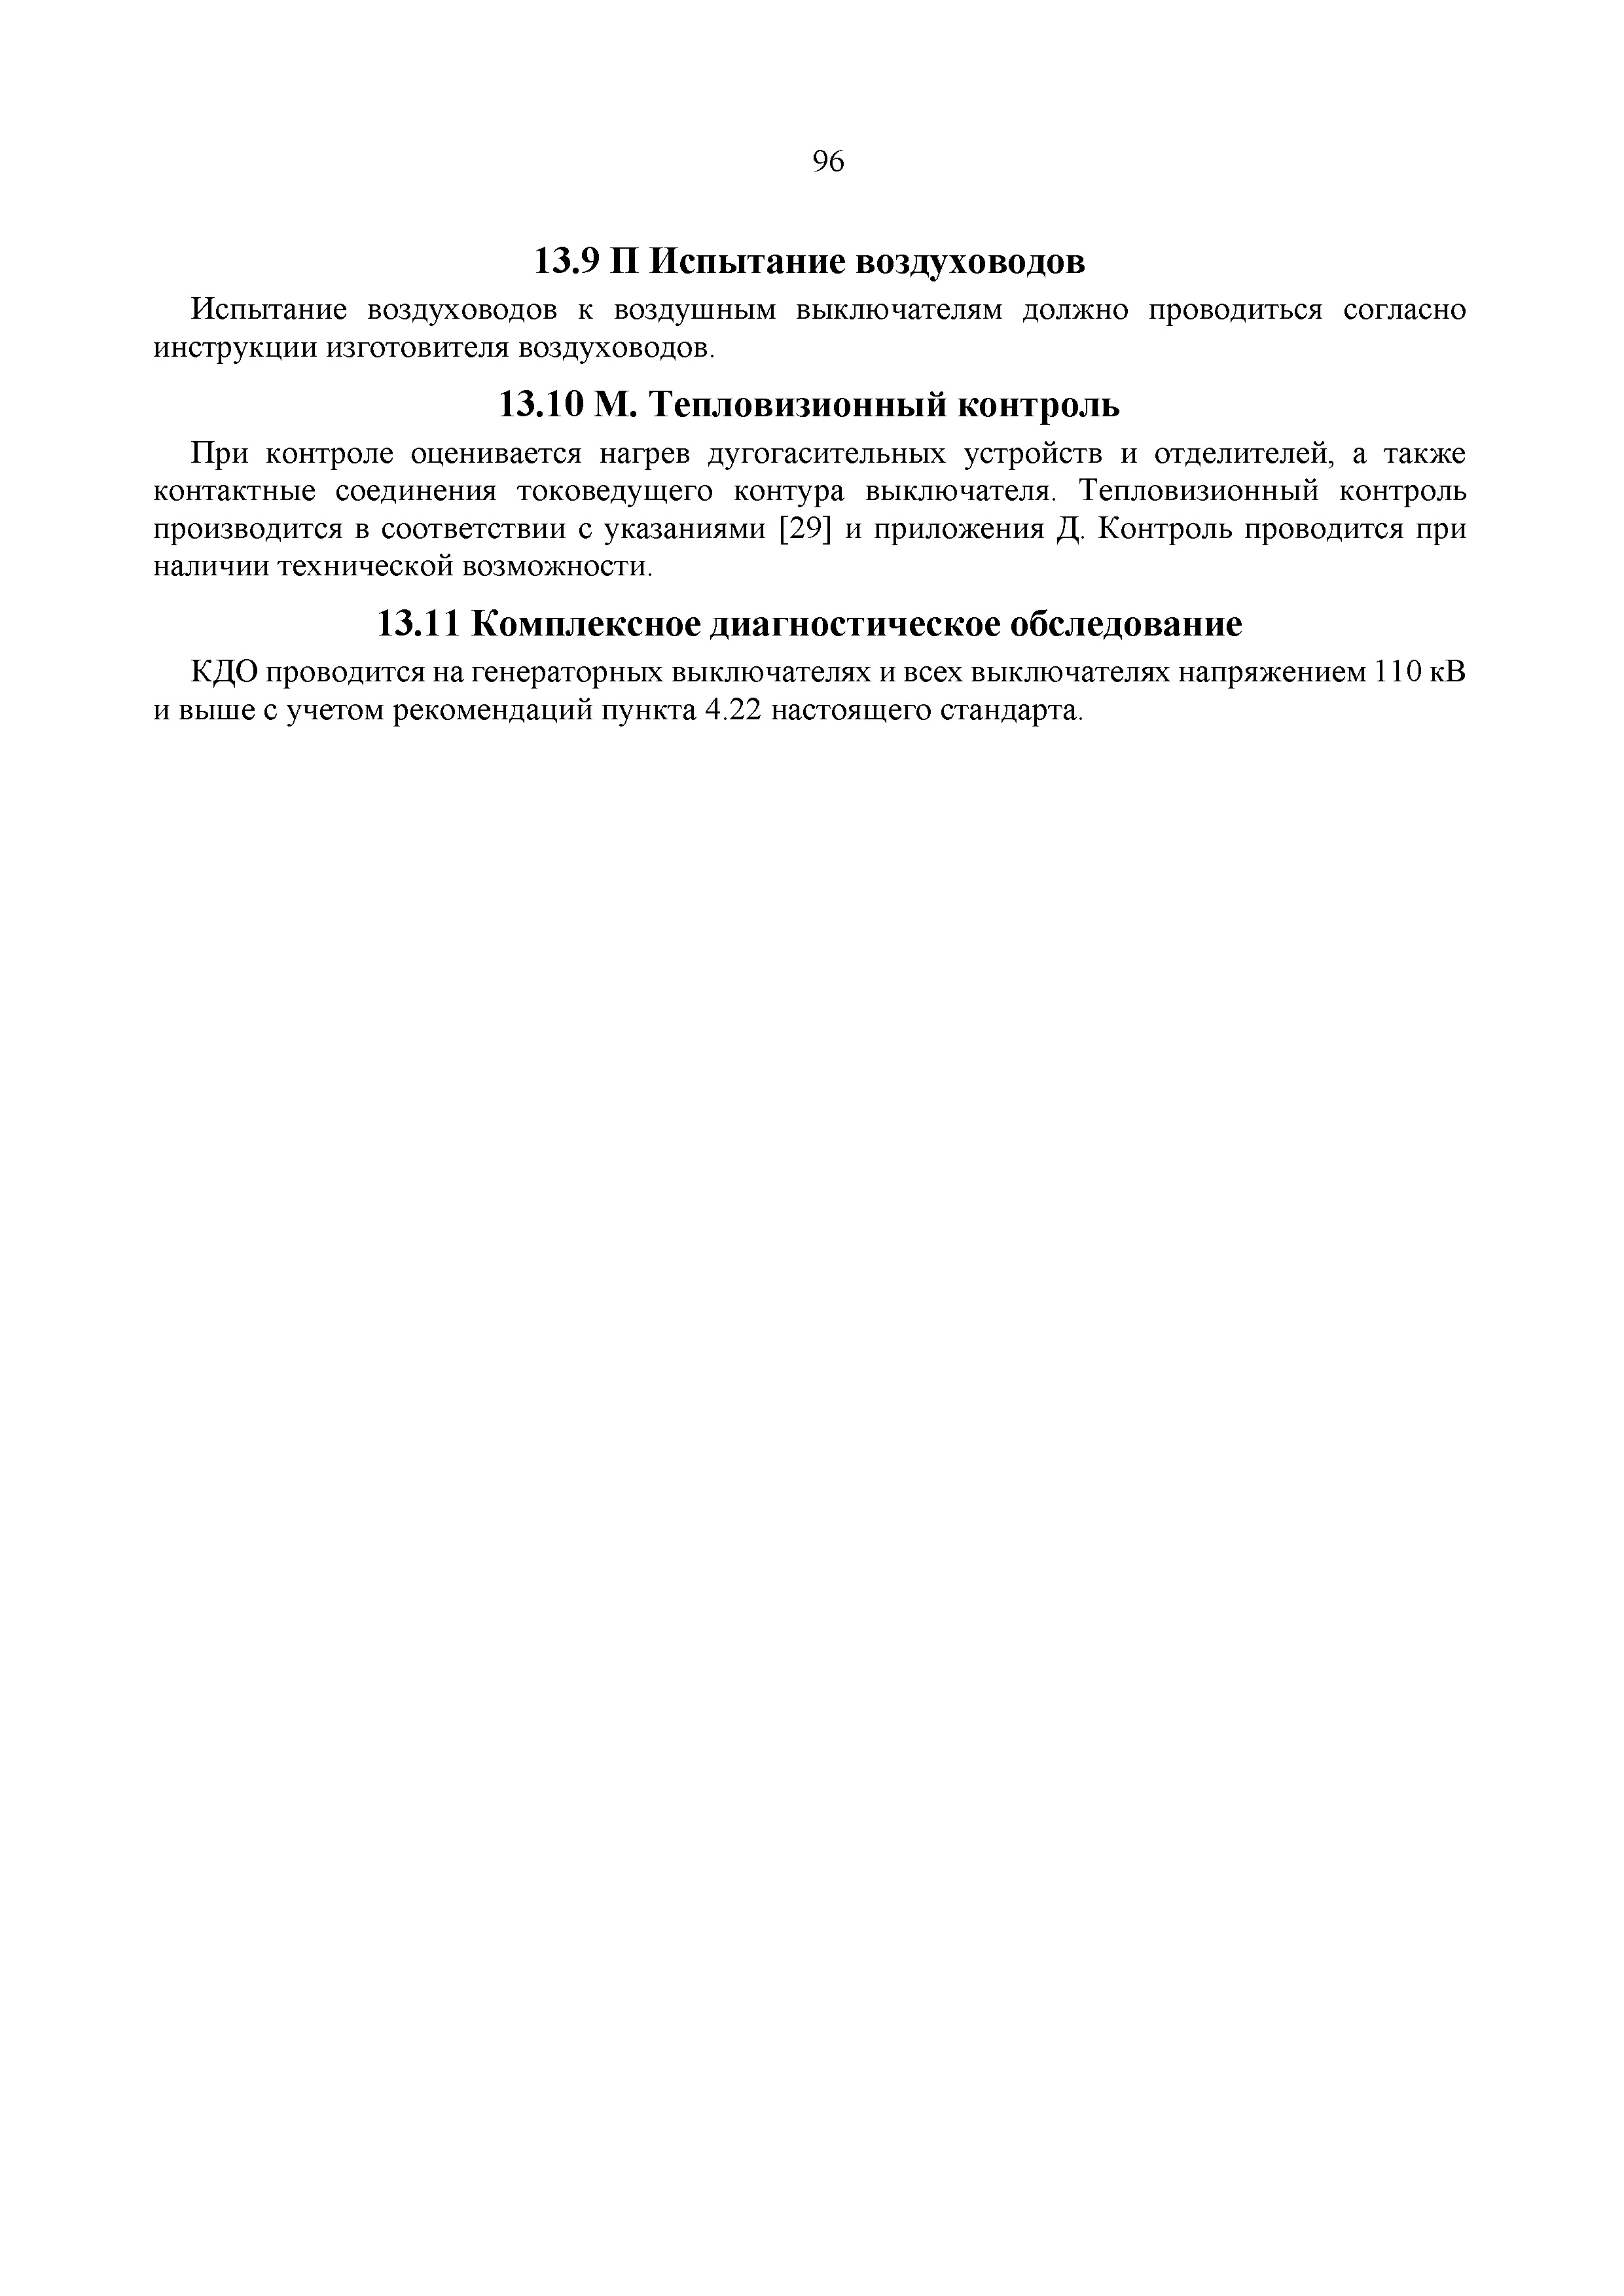 СТО 34.01-23.1-001-2017